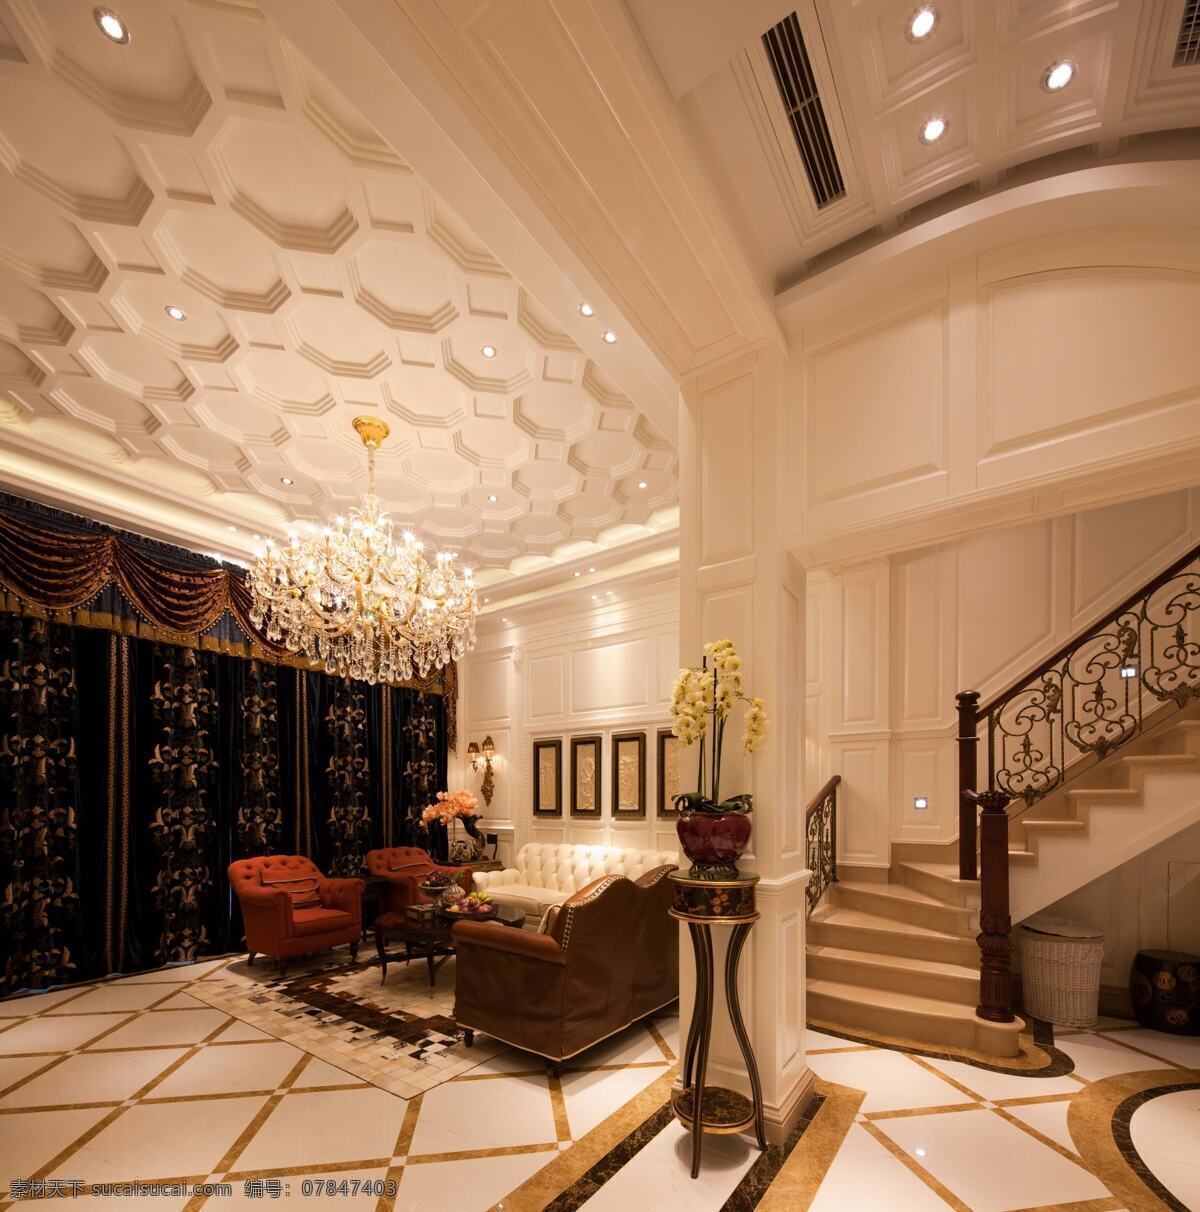 室内 大厅 现代 欧式 豪华 装修 效果图 黄色灯光 欧式石雕门 金属工艺楼梯 创意吊顶